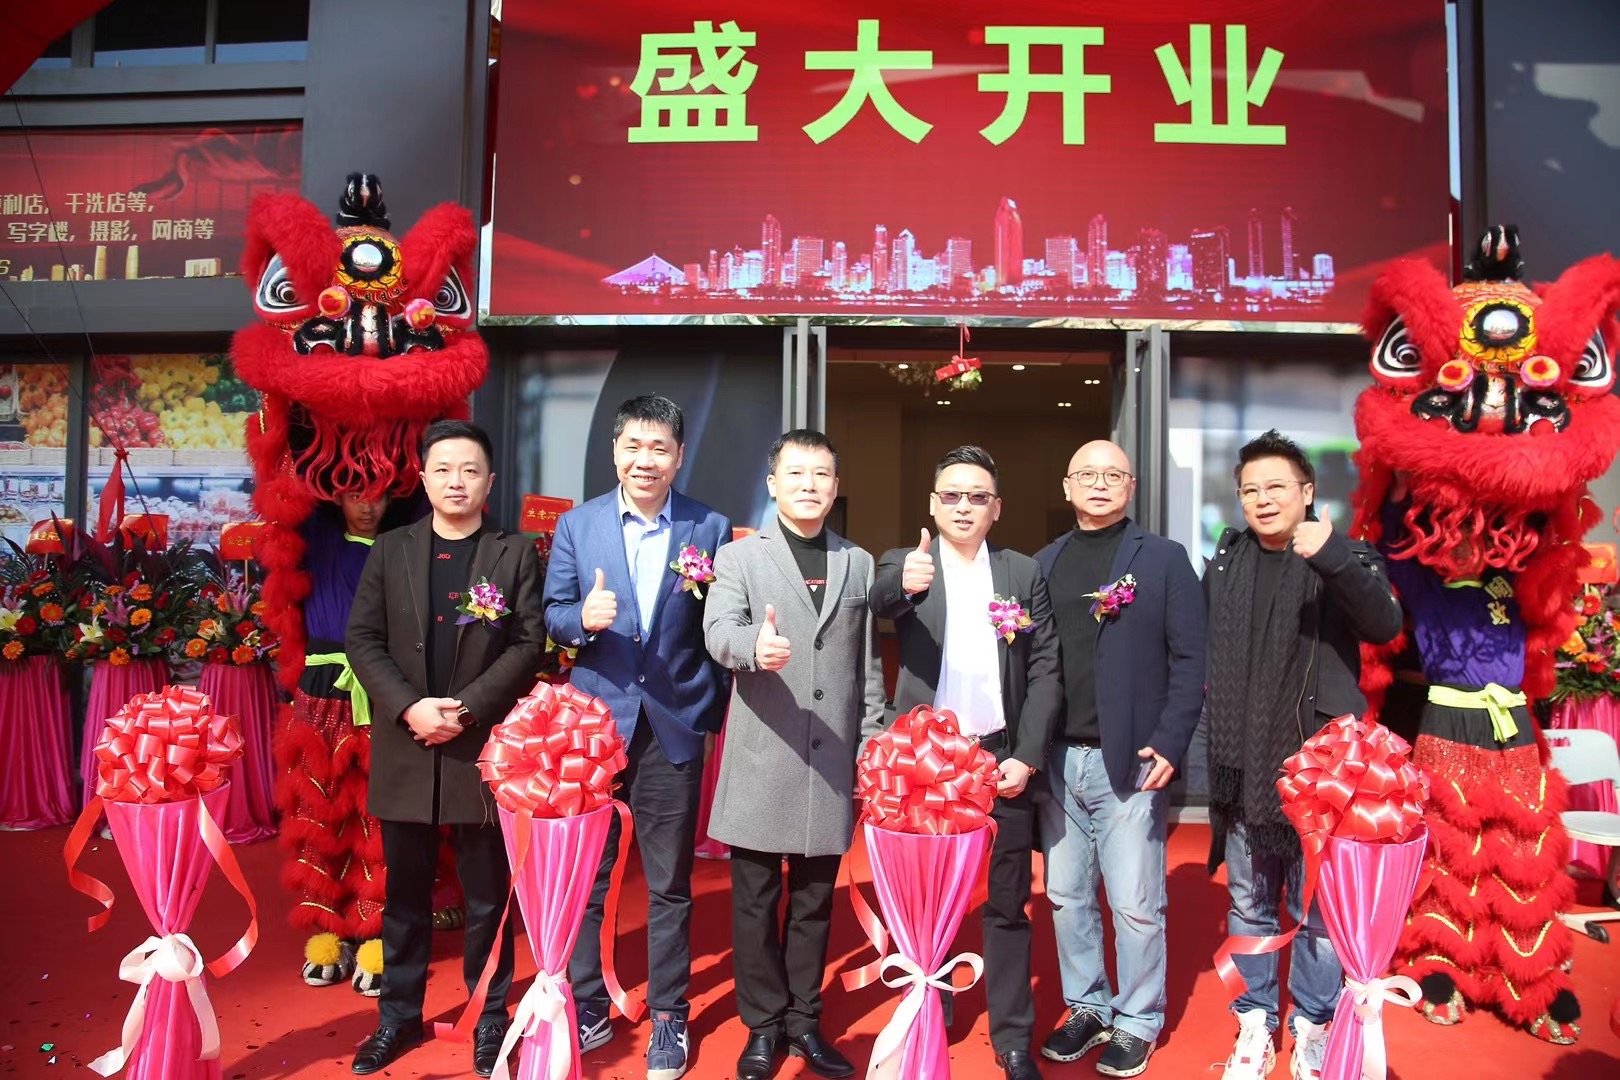 华南最大“智能办公+智能家居”展示体验综合体开业了